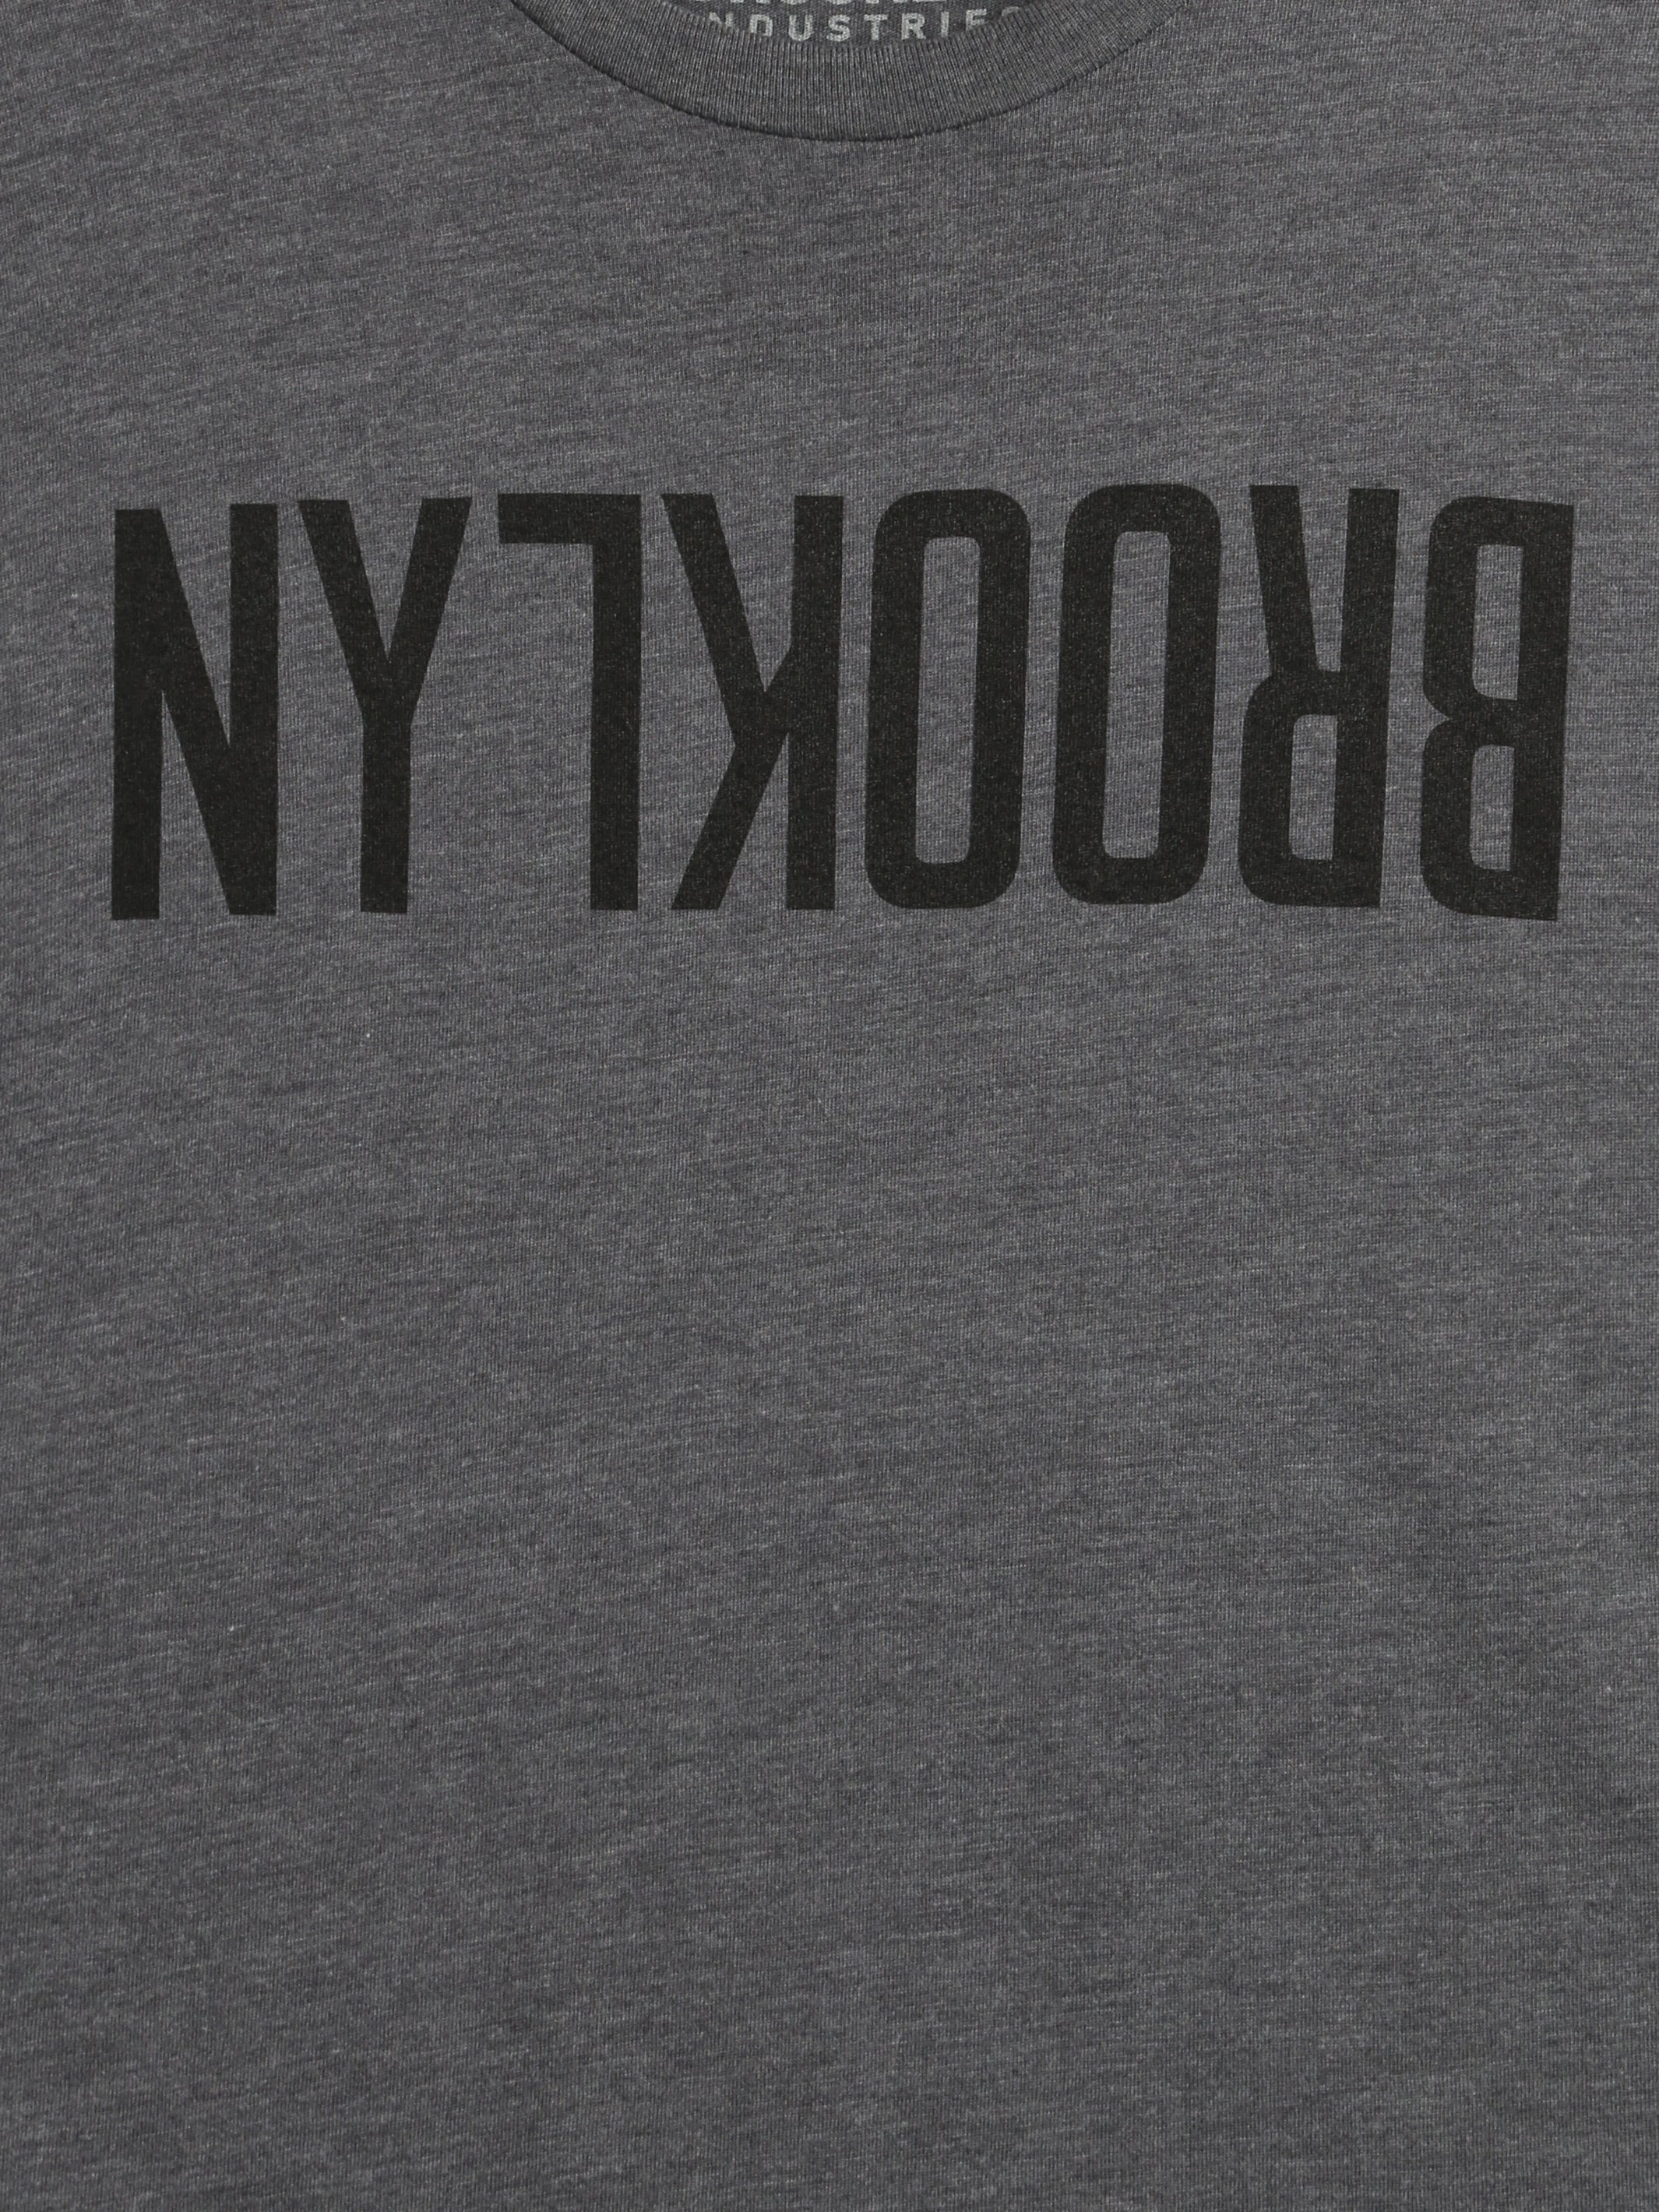 Men's Flipped Brooklyn T-Shirt - BROOKLYN INDUSTRIES